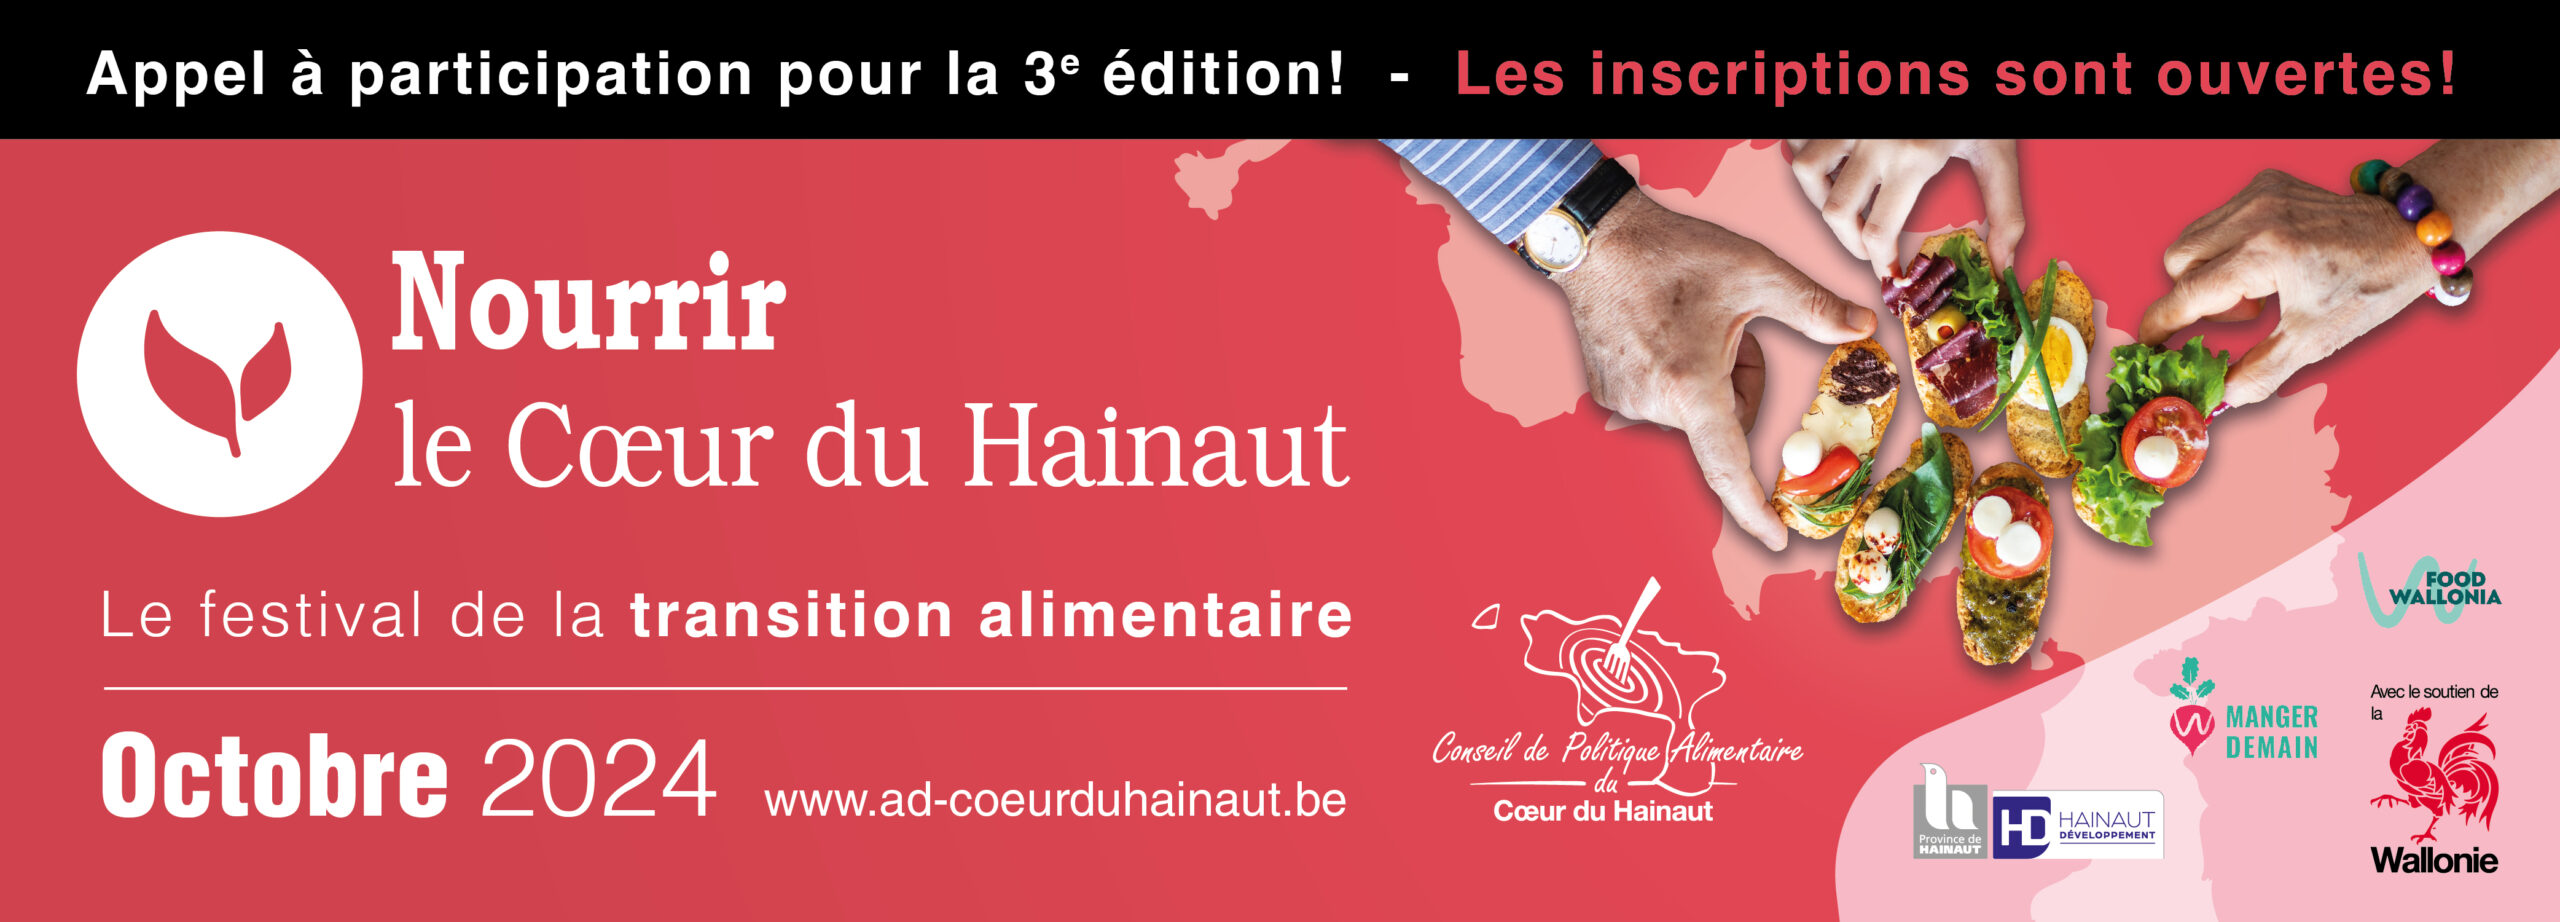 3e édition du Festival “Nourrir le Cœur du Hainaut”!